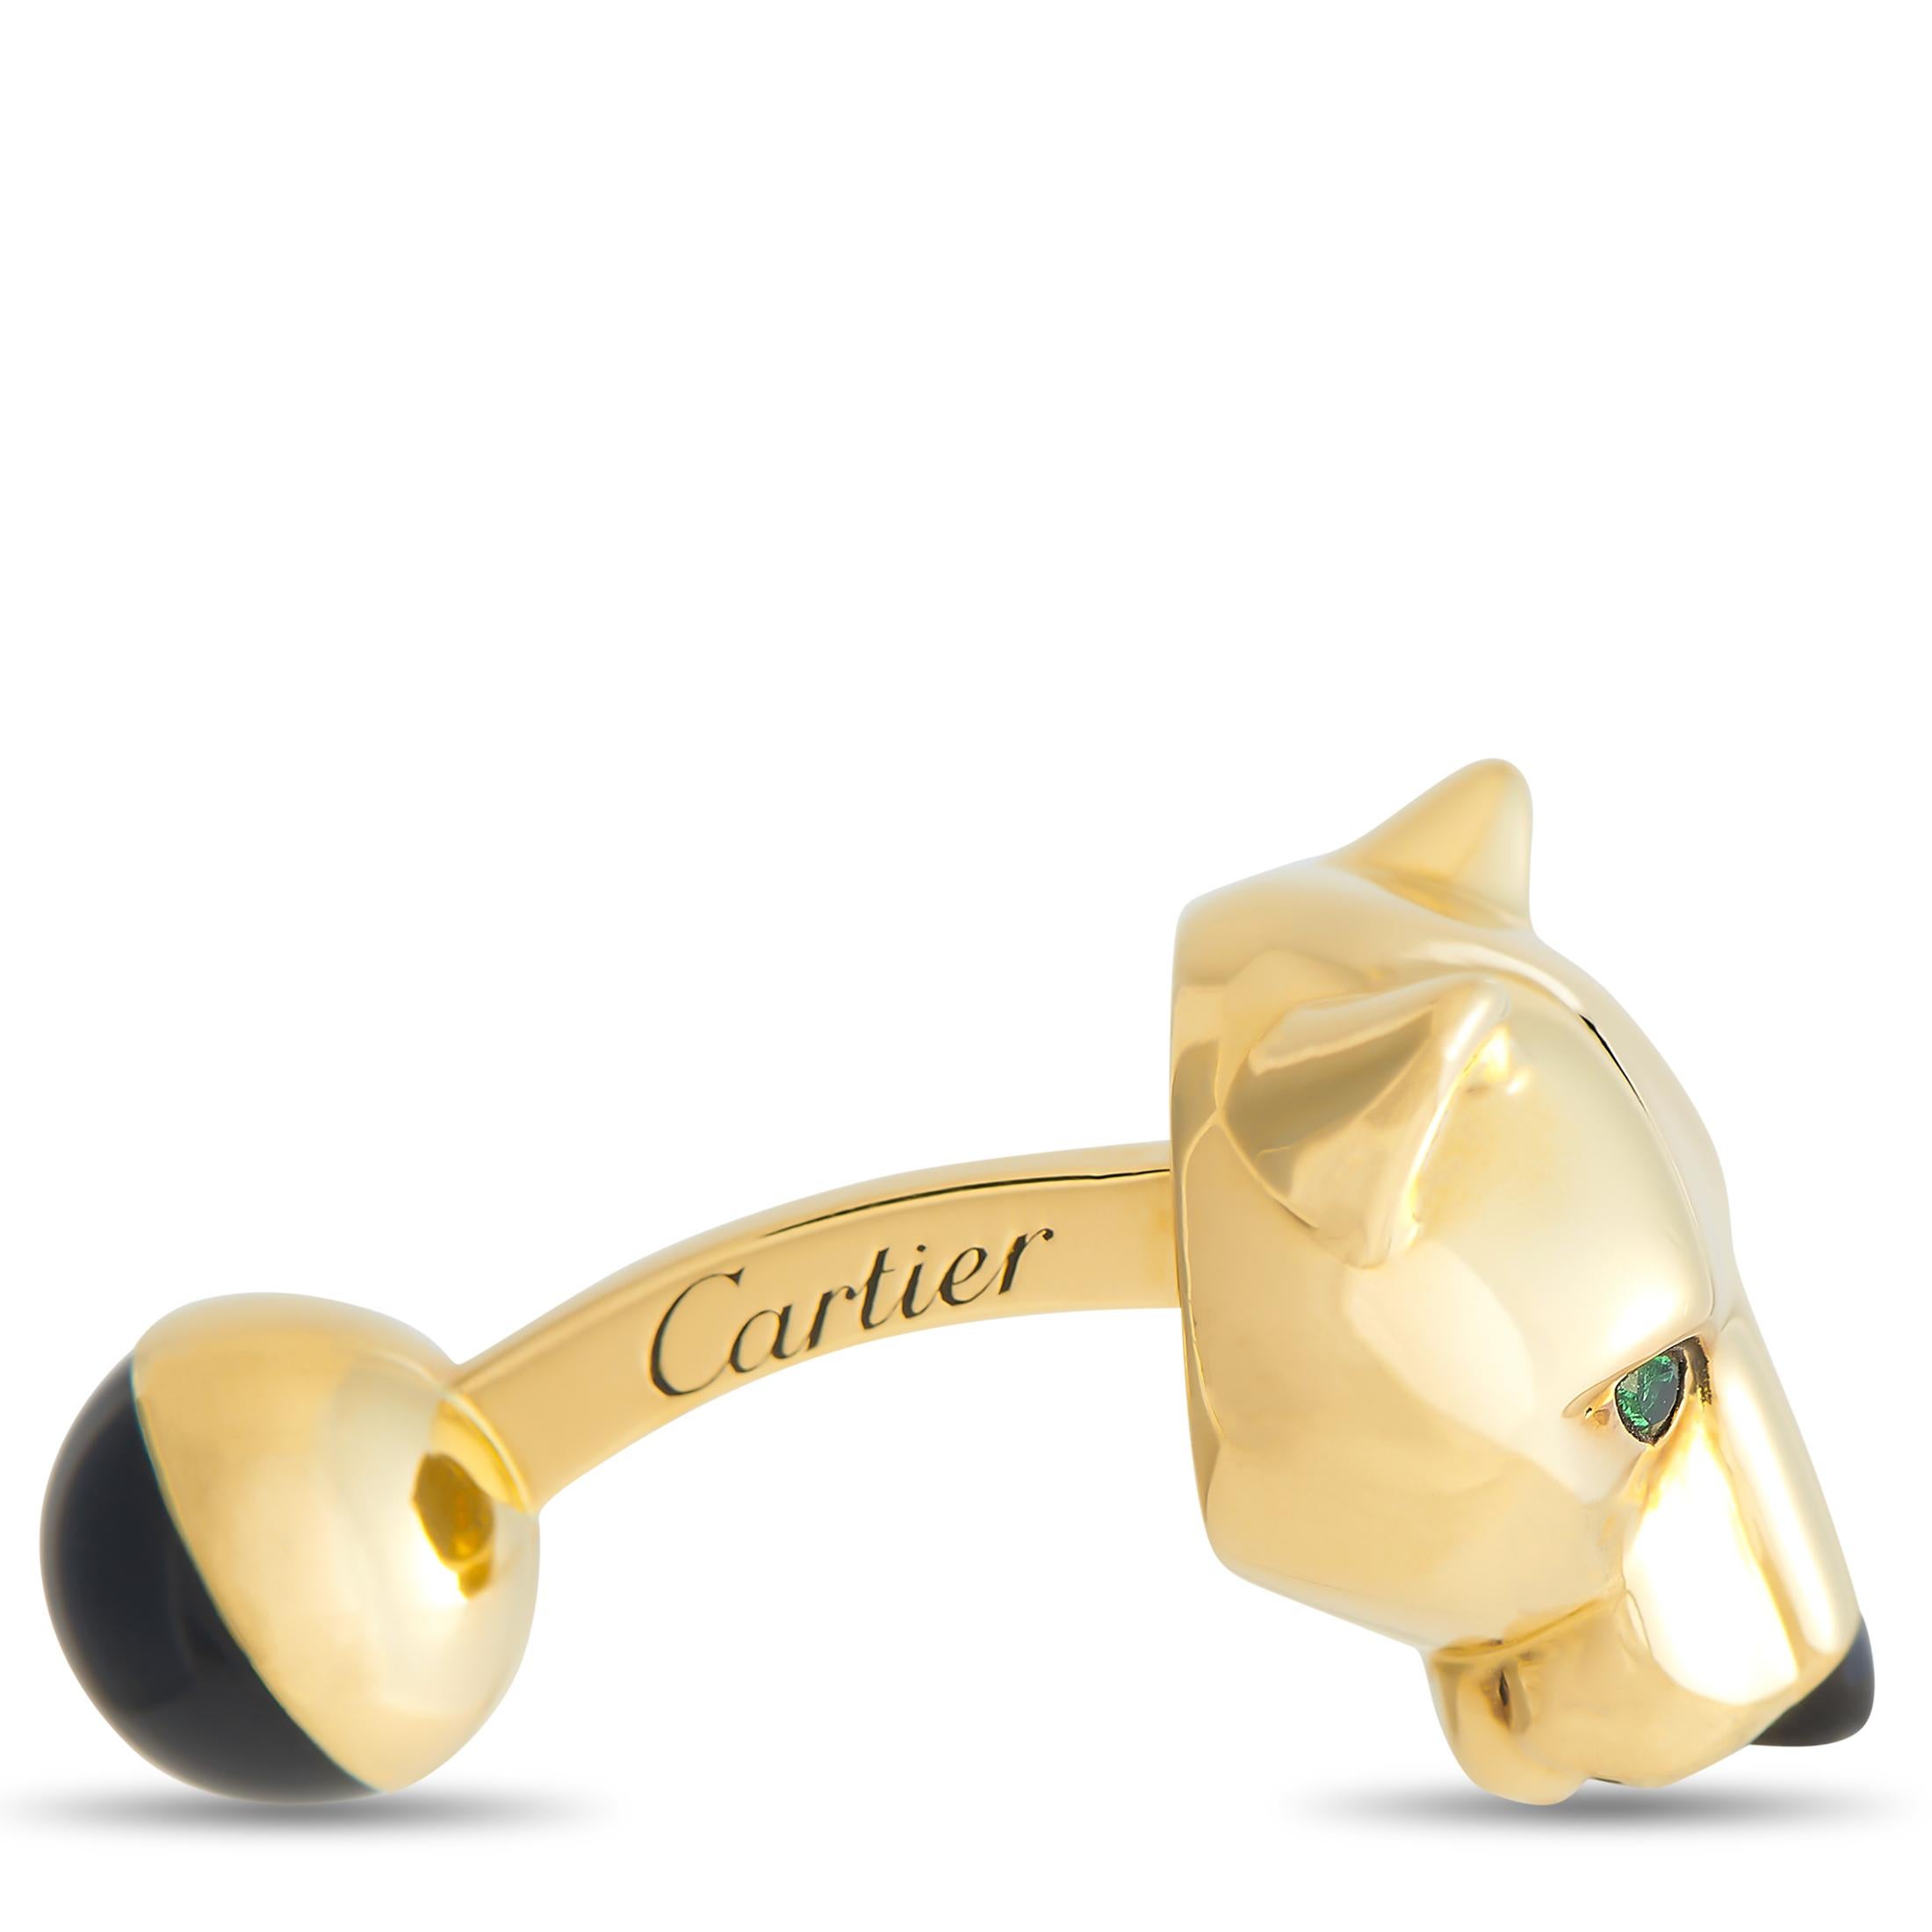 Ein seltener Fund, dieser vollständig signierte Cartier18K Gelbgold Panthere Manschettenknöpfe würde ein großes Geschenk für jemand Besonderen. Dieses Accessoire aus Gelbgold zeigt die Panthere, eine ikonische Kreatur in der Welt des Schmucks. Jeder